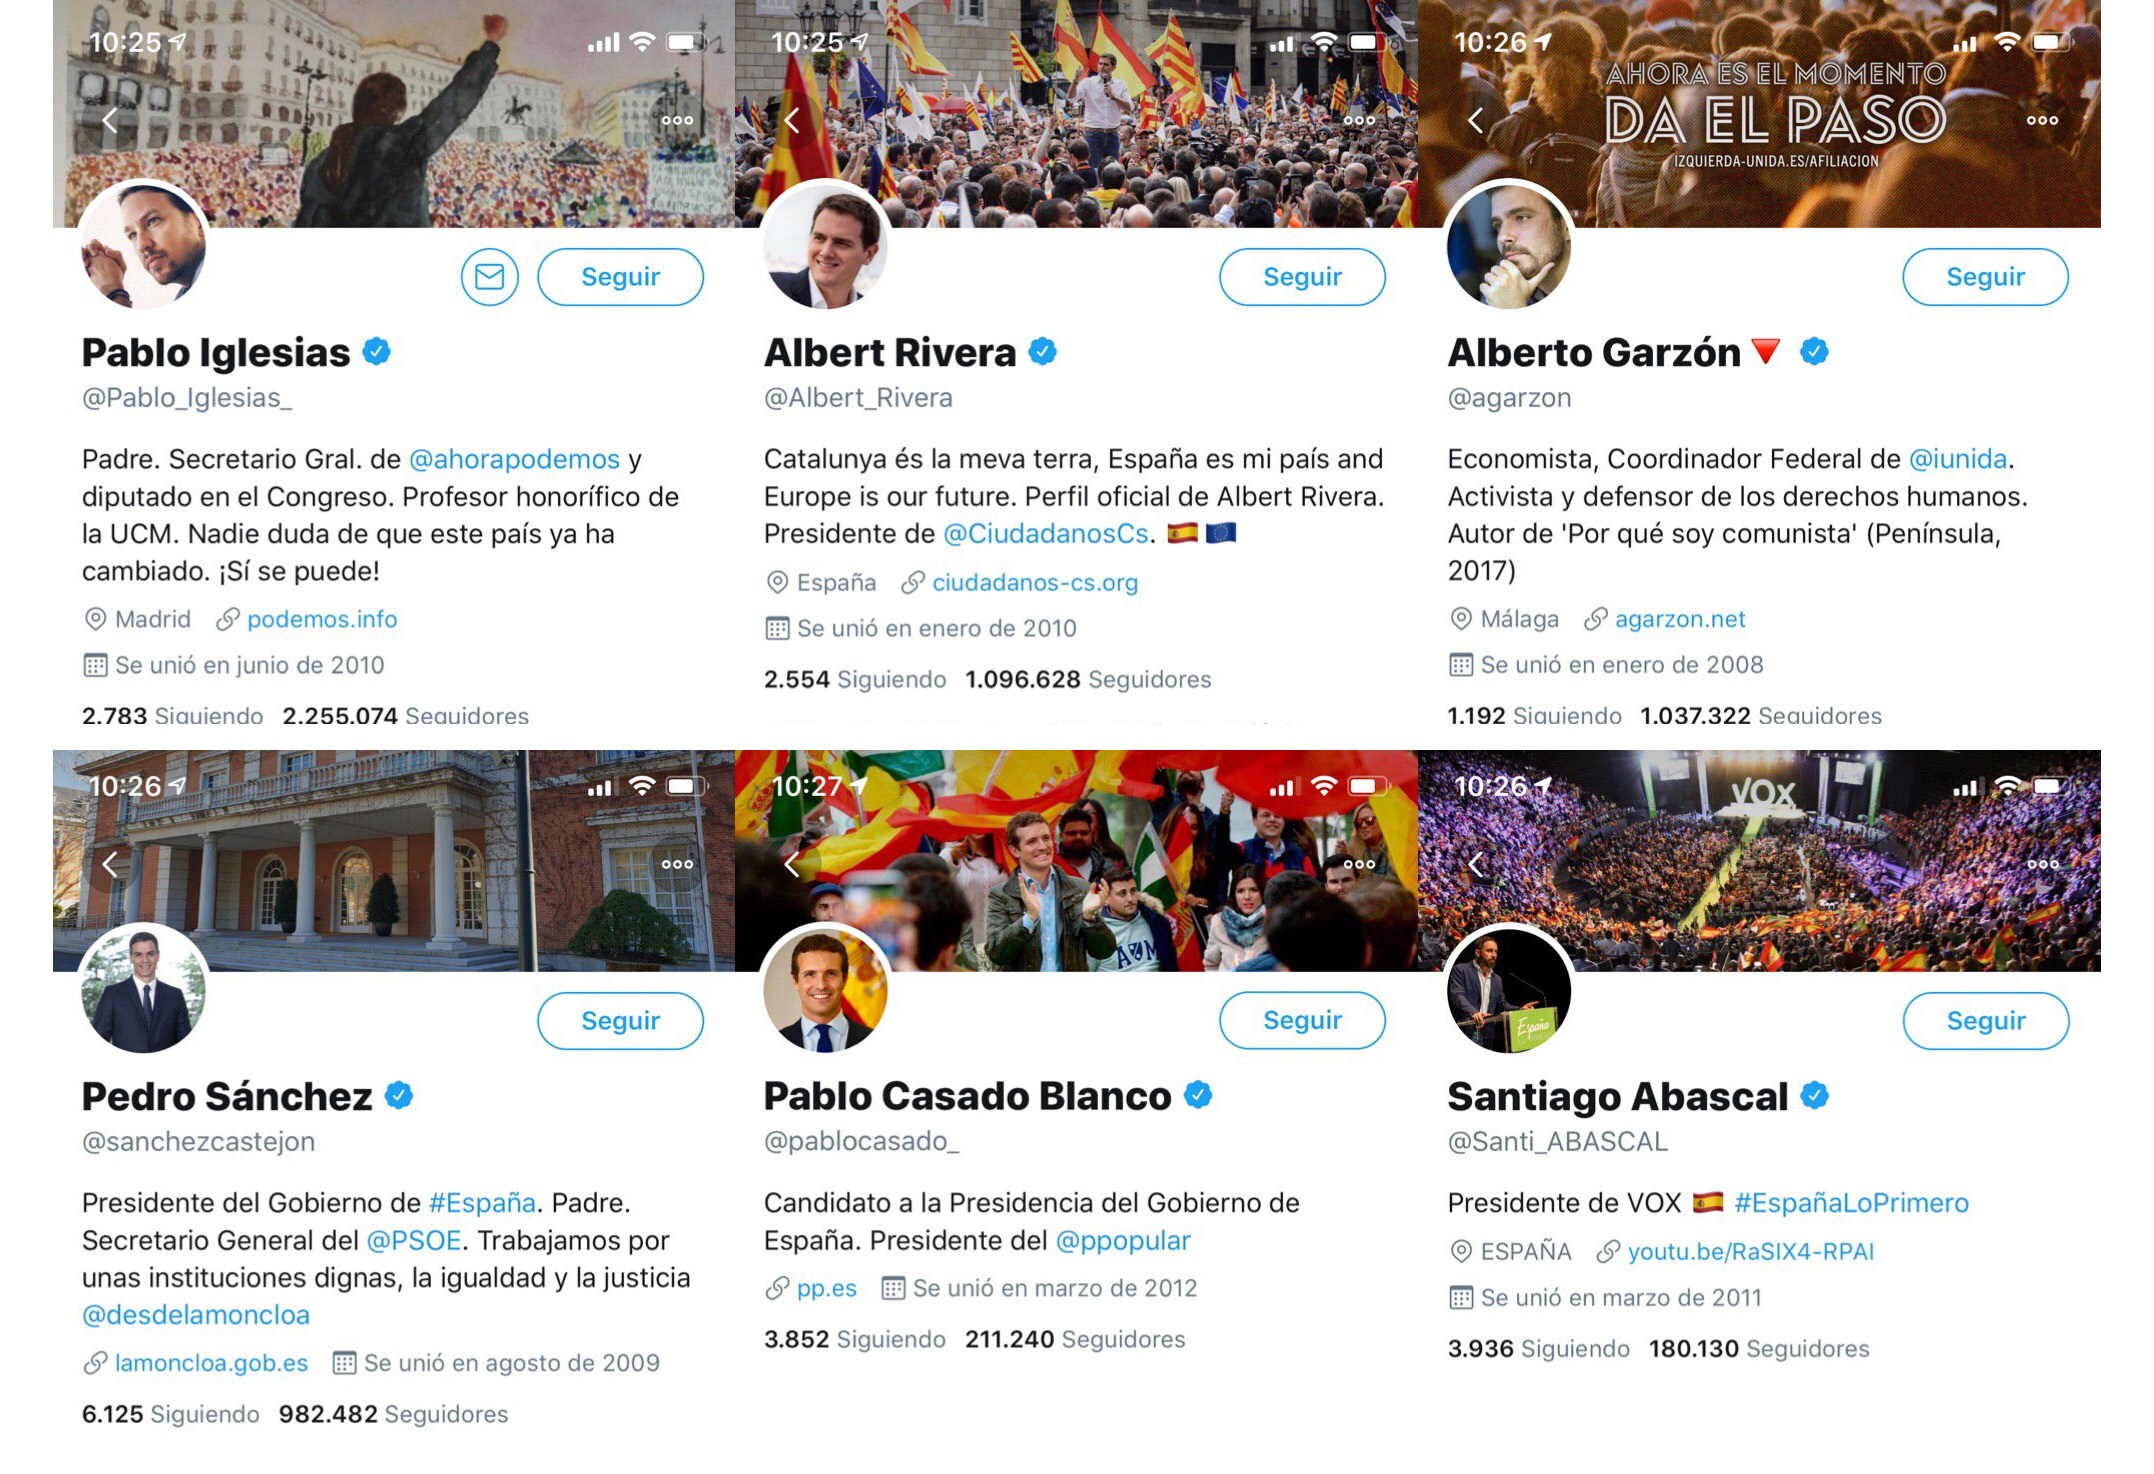 Situación de las redes sociales de los principales líderes el 18 de febrero de 2019